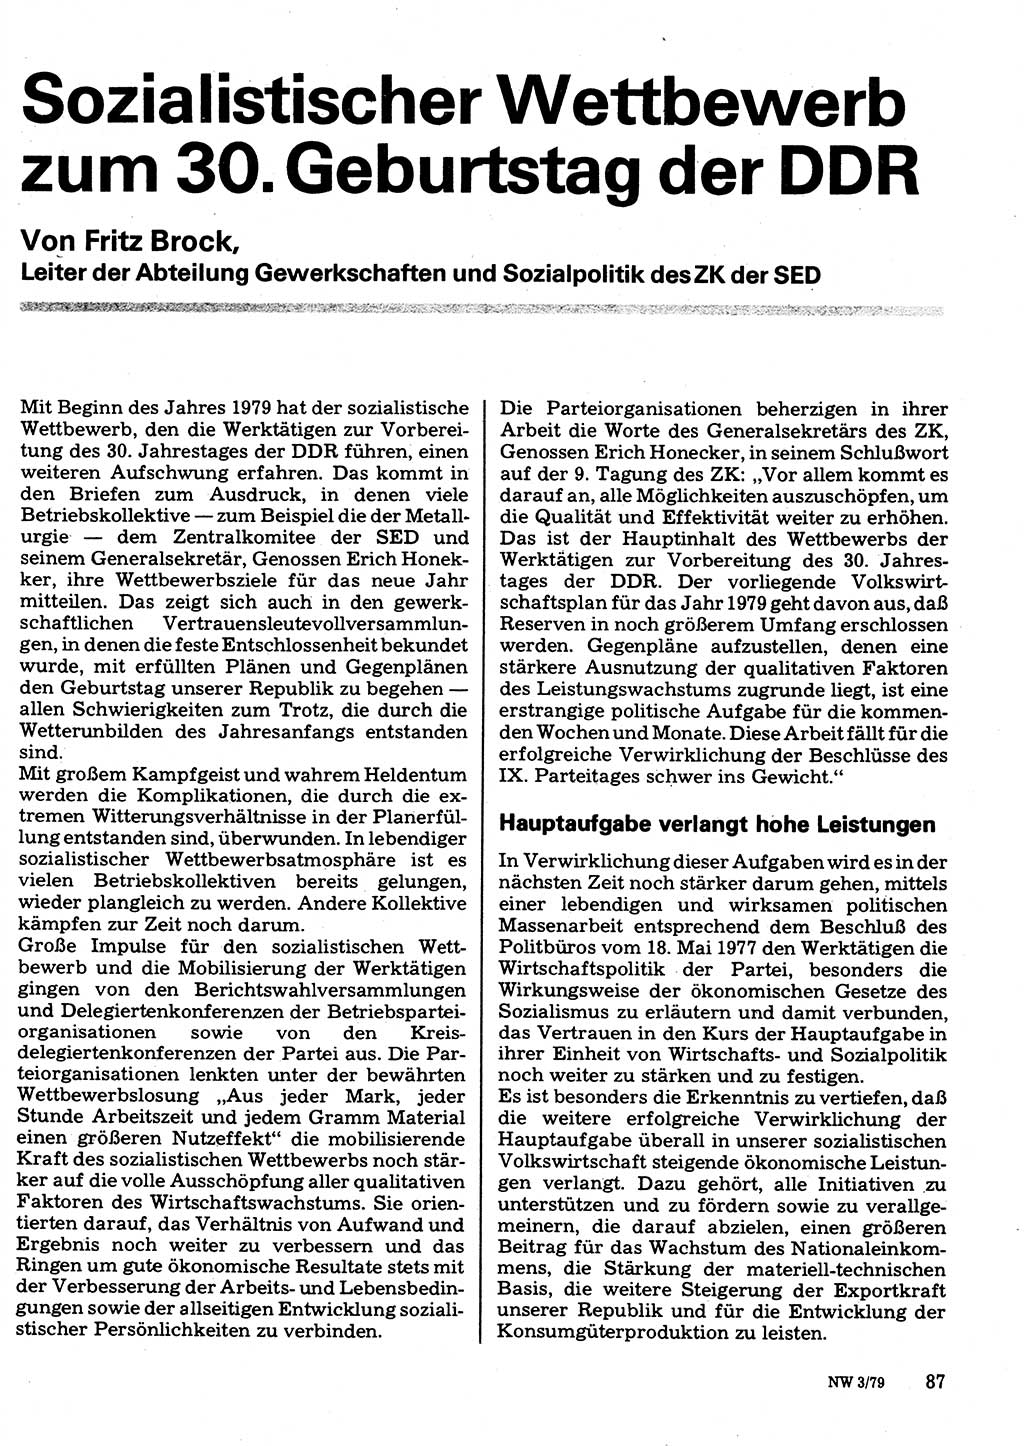 Neuer Weg (NW), Organ des Zentralkomitees (ZK) der SED (Sozialistische Einheitspartei Deutschlands) für Fragen des Parteilebens, 34. Jahrgang [Deutsche Demokratische Republik (DDR)] 1979, Seite 87 (NW ZK SED DDR 1979, S. 87)